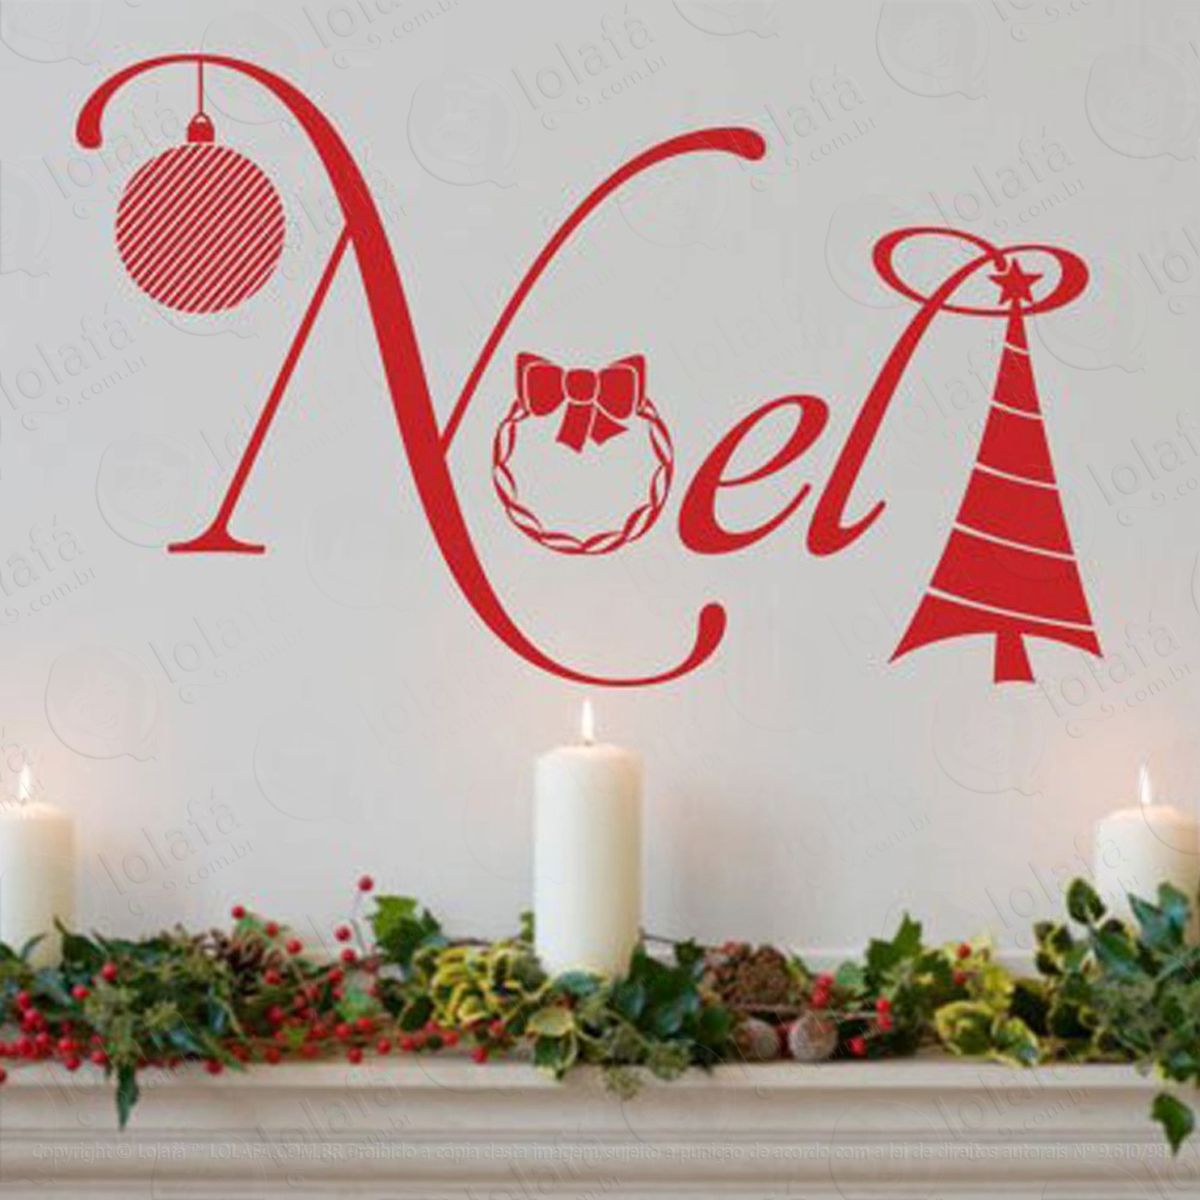 noel decorativo adesivo de natal para vitrine, parede, porta de vidro - decoração natalina mod:165